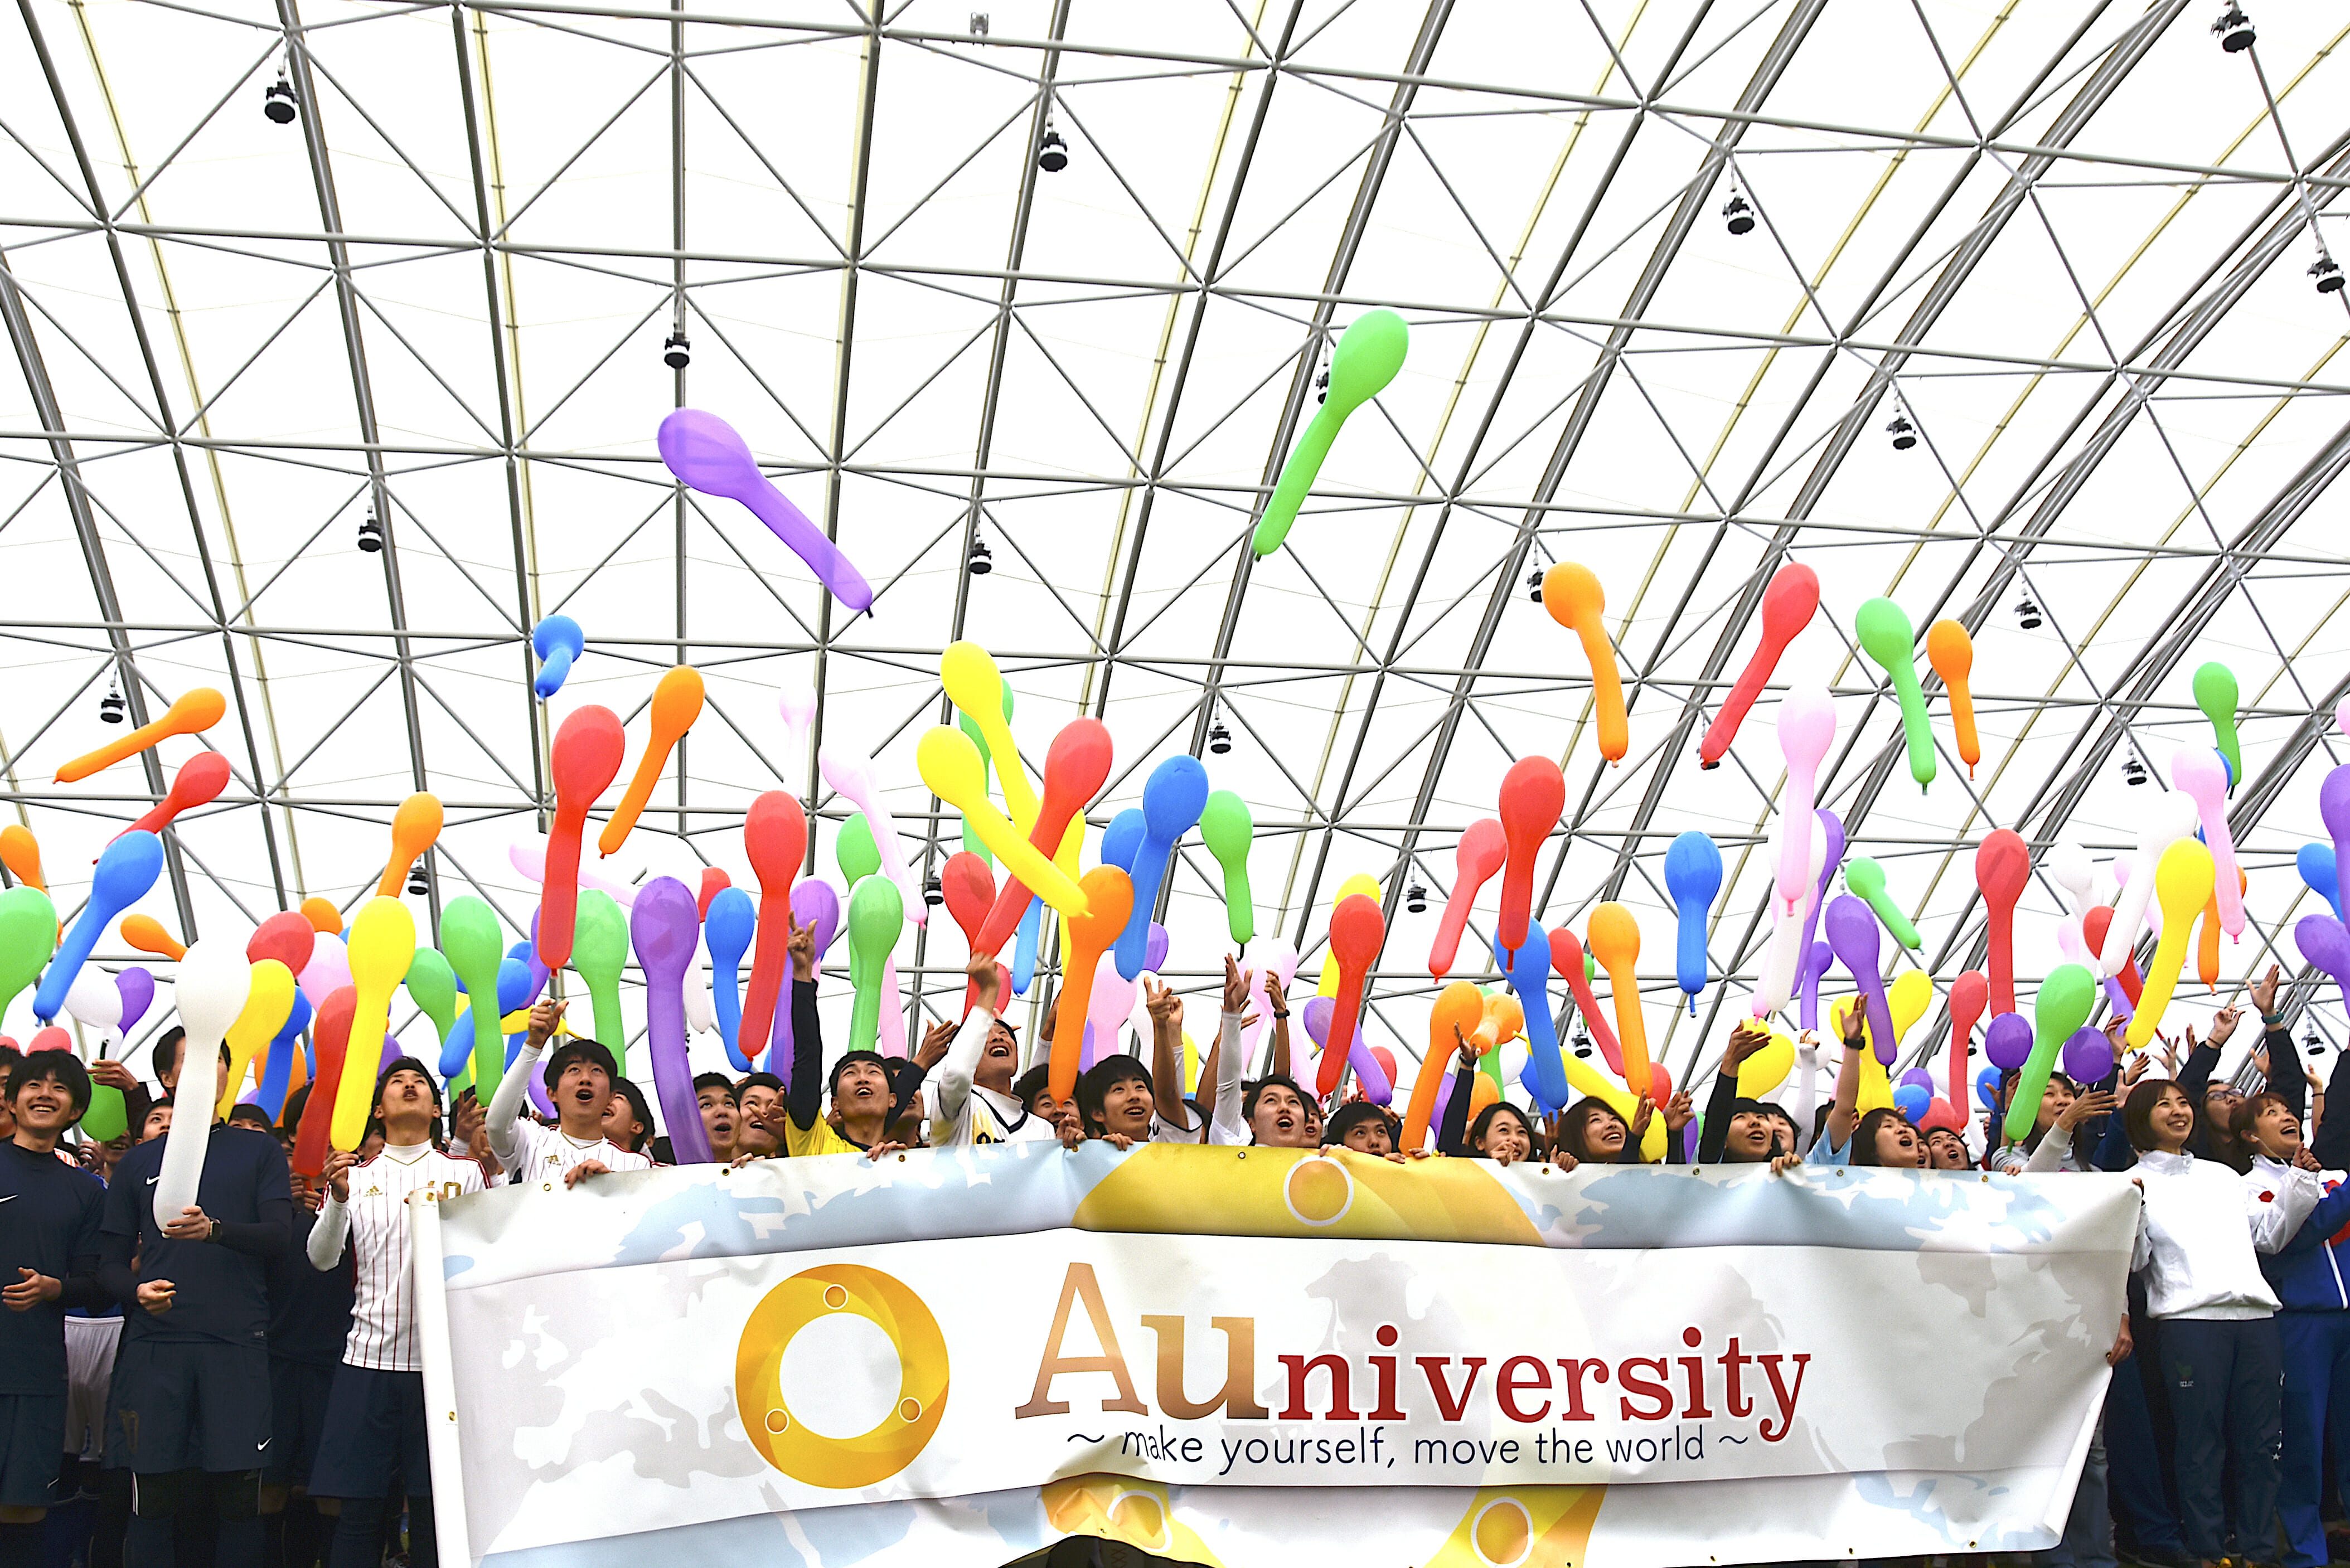 Auiversity Festival in 福島 2019